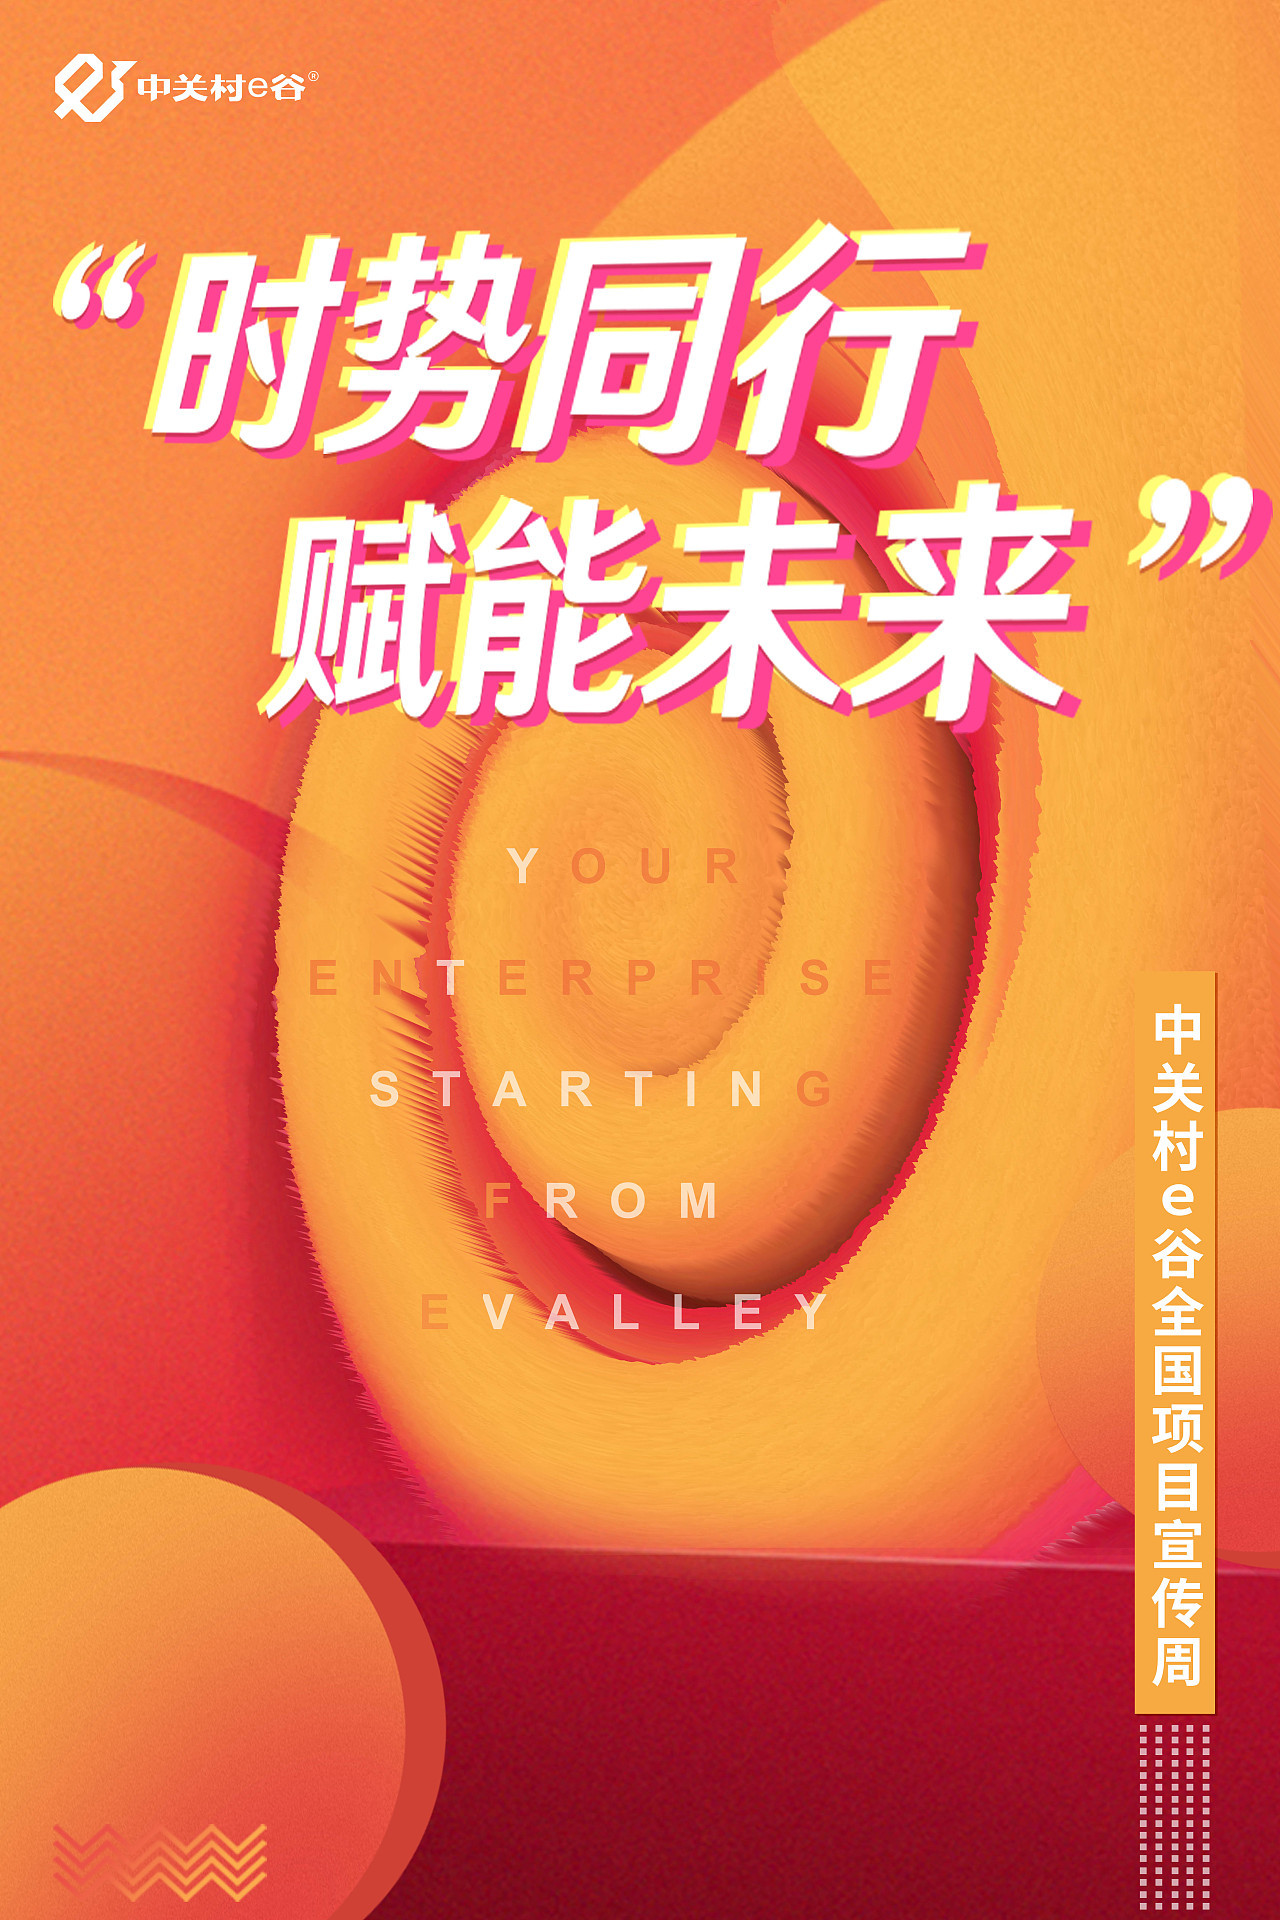 中关村e谷-项目宣传周海报图0